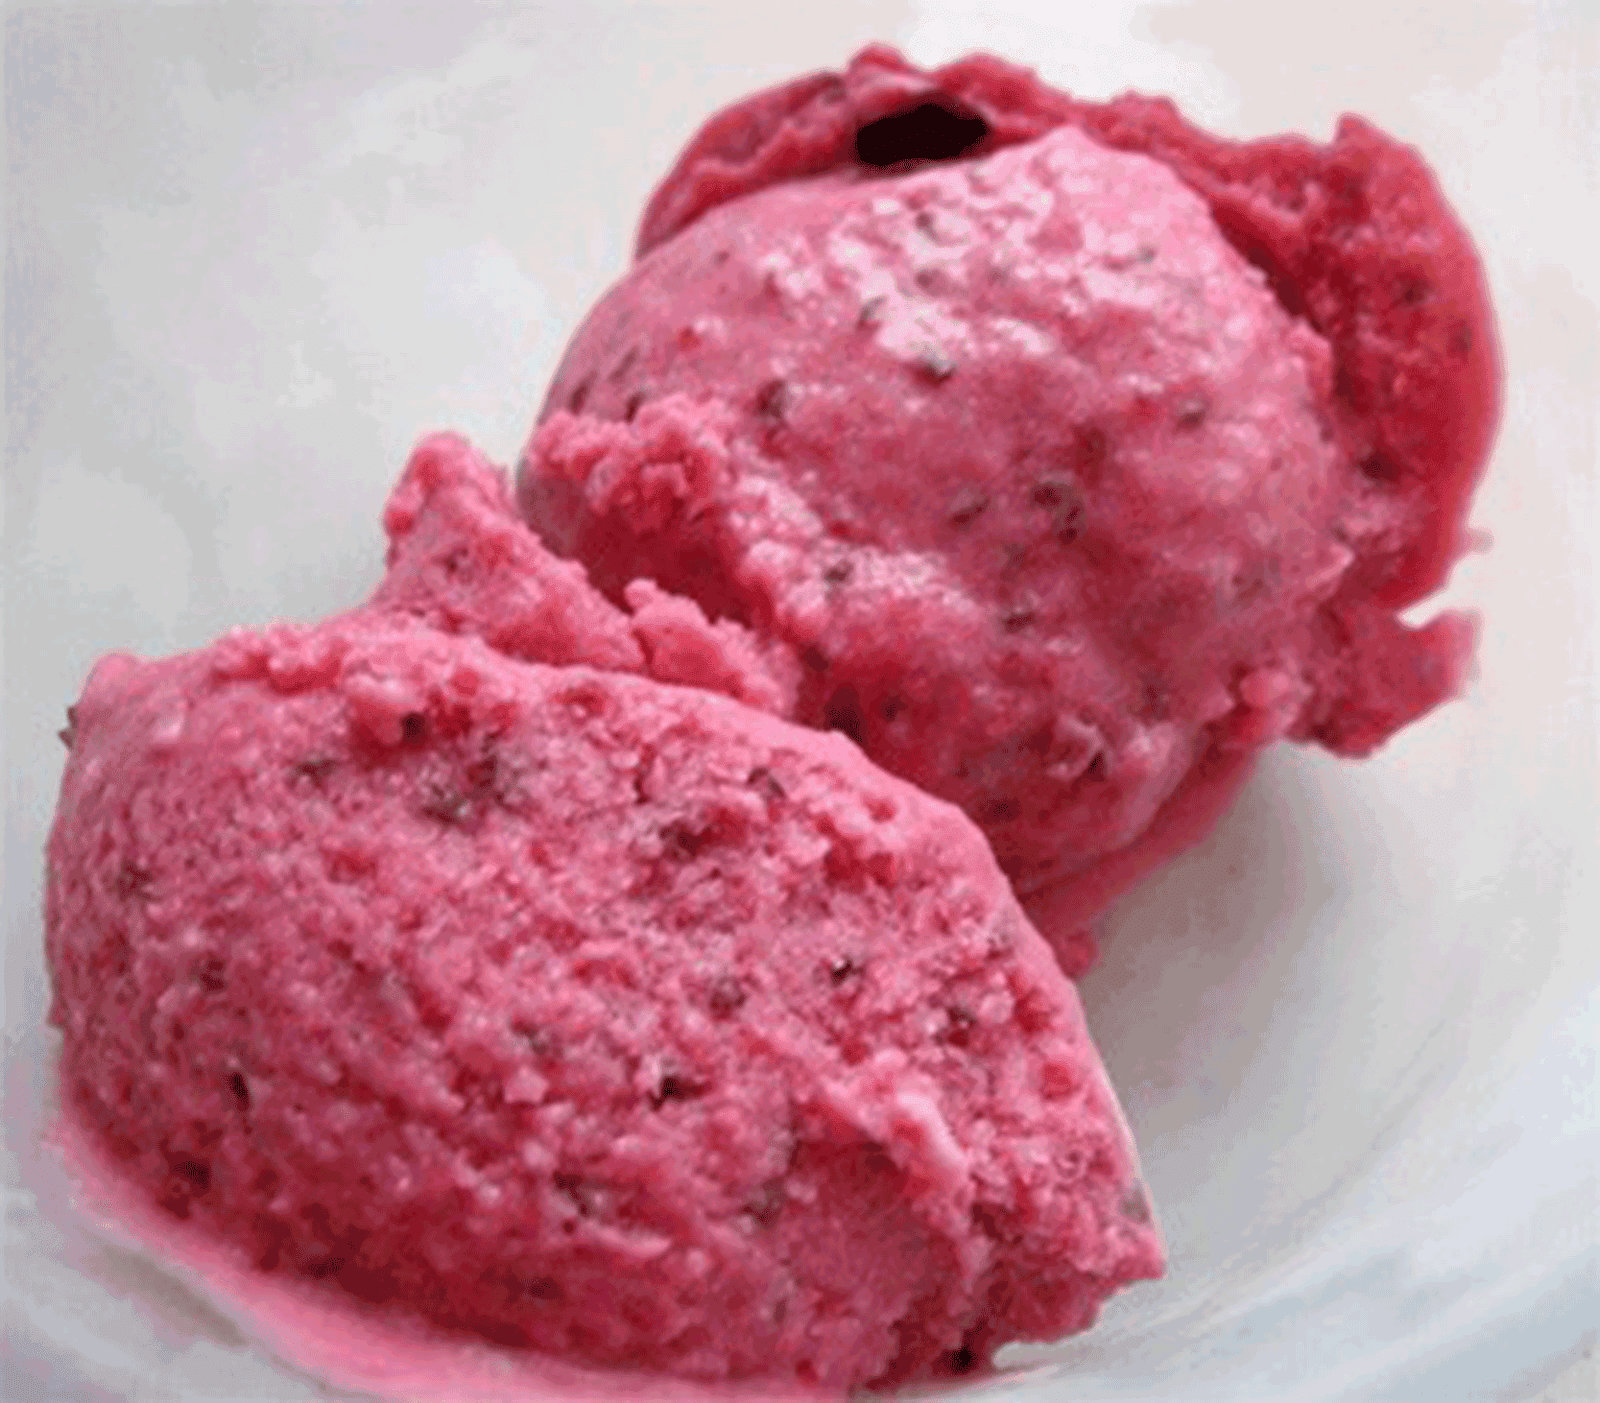 Blackcurrant Ice Cream Recipe